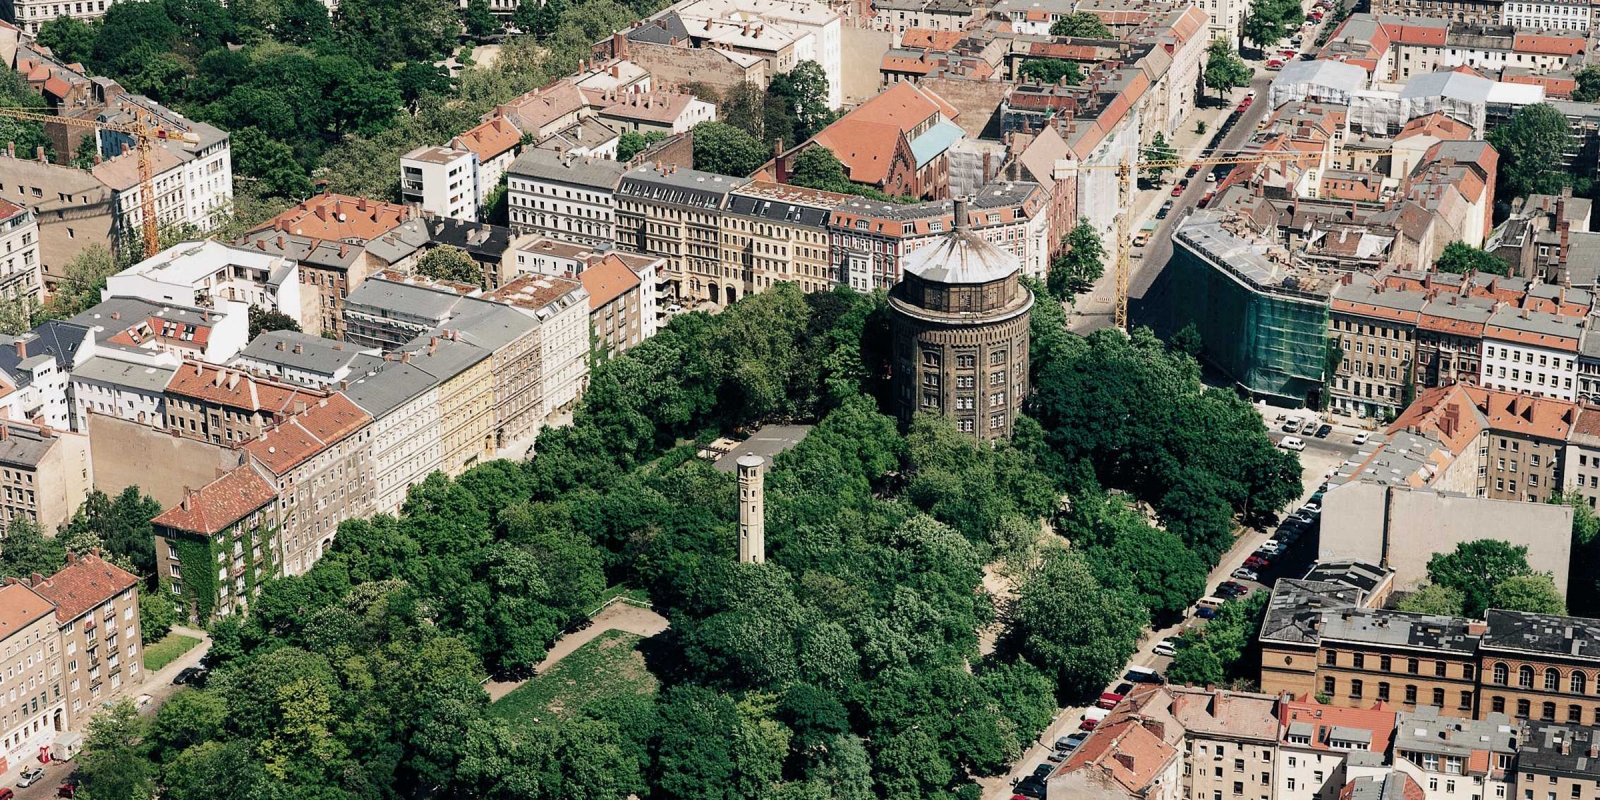 Wasserturm und historischer Steigrohrturm in Prenzlauer Berg